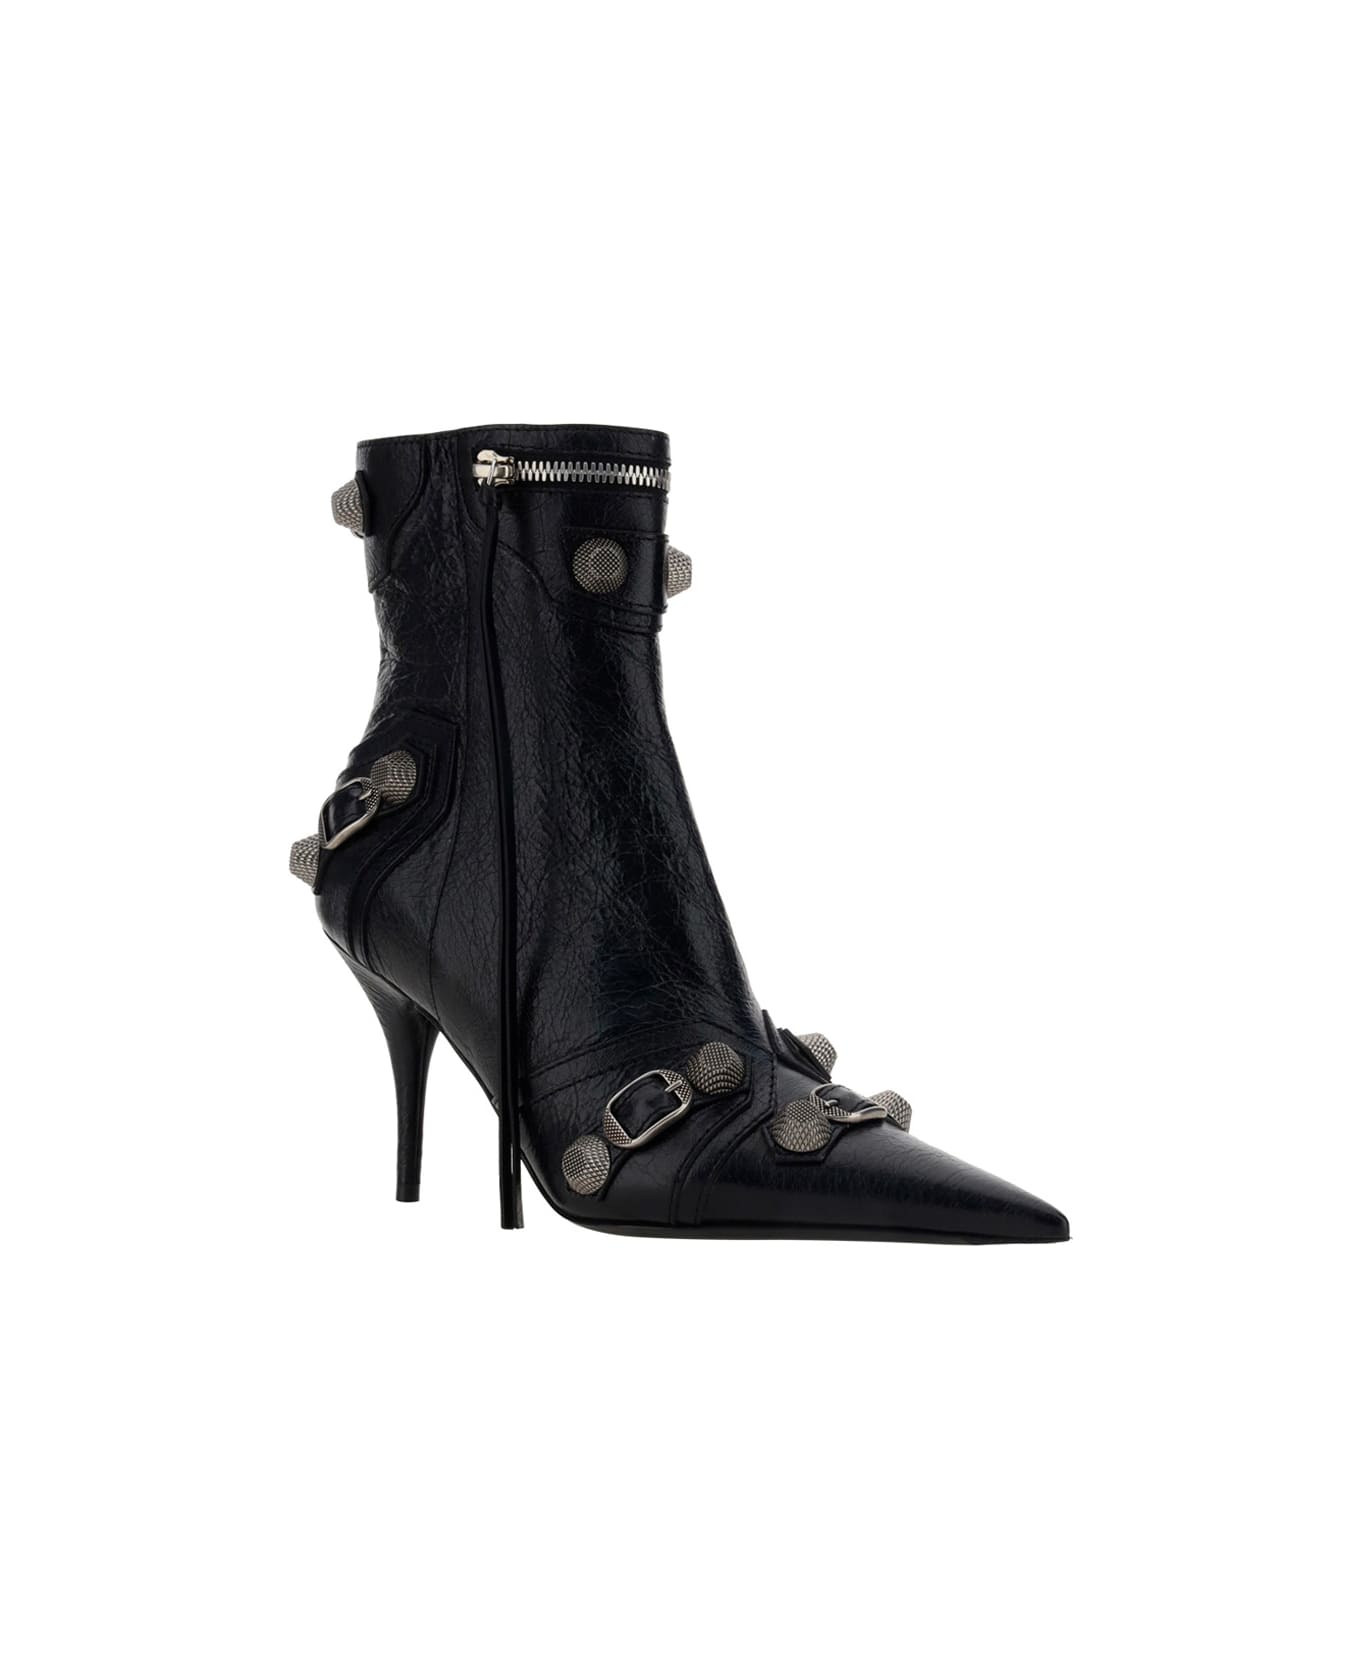 Balenciaga Le Cagole Boots - Black/silver